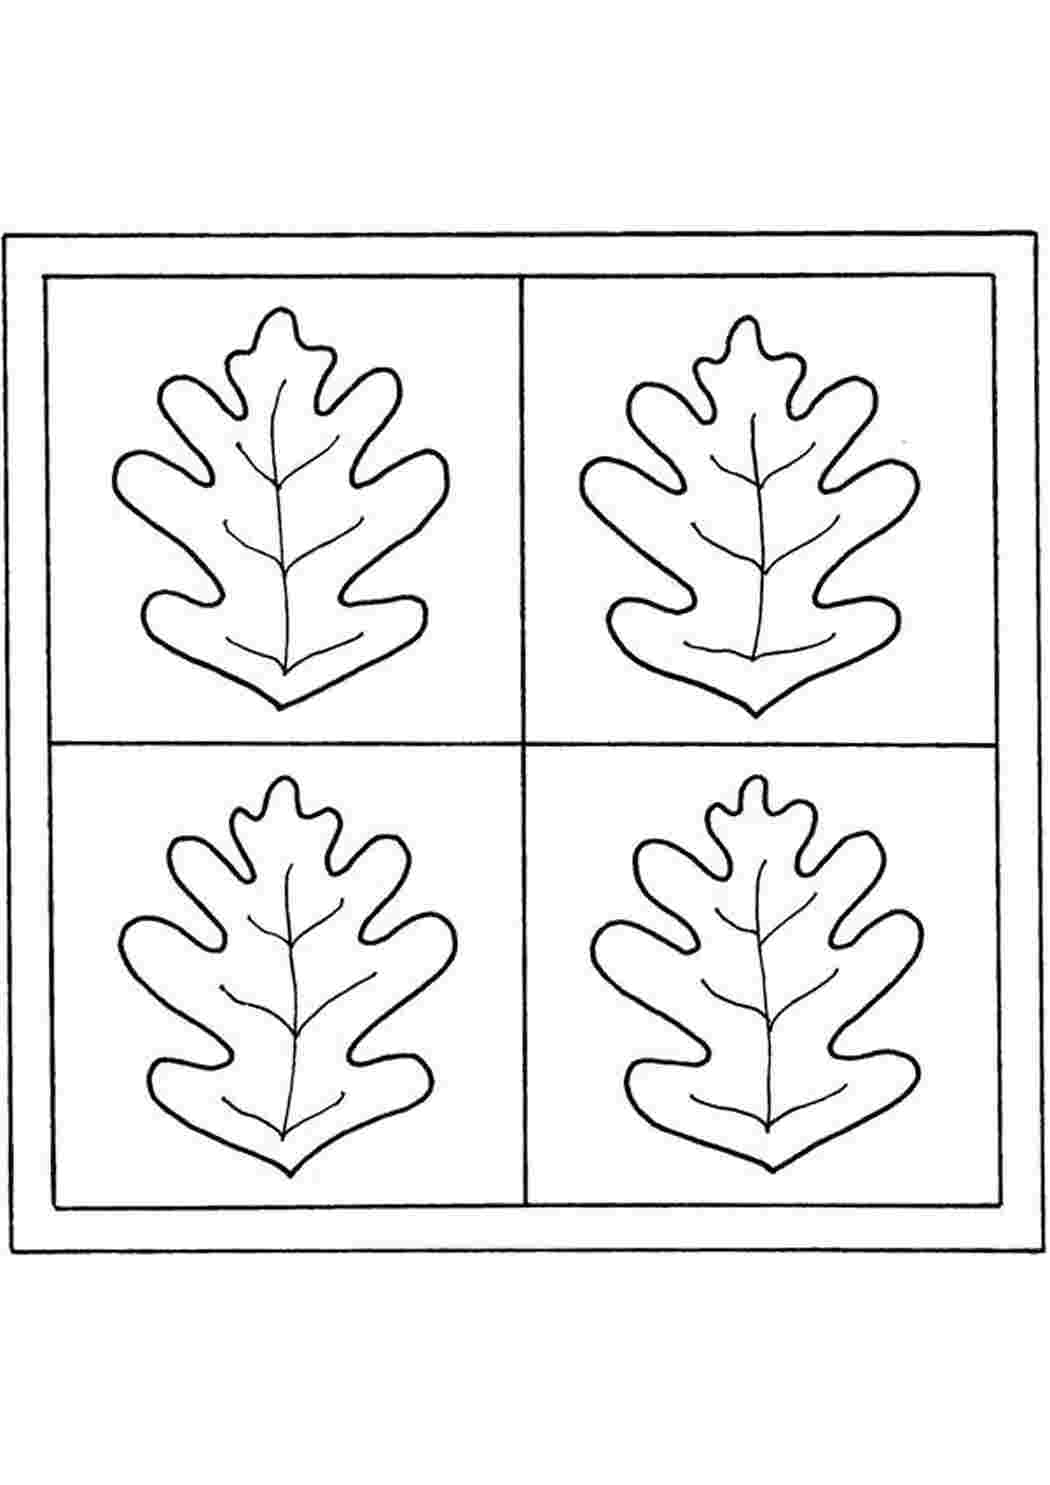 Раскраски лист дуба шаблон - Домашние растения ... Лист Дерева Раскраска растения лист